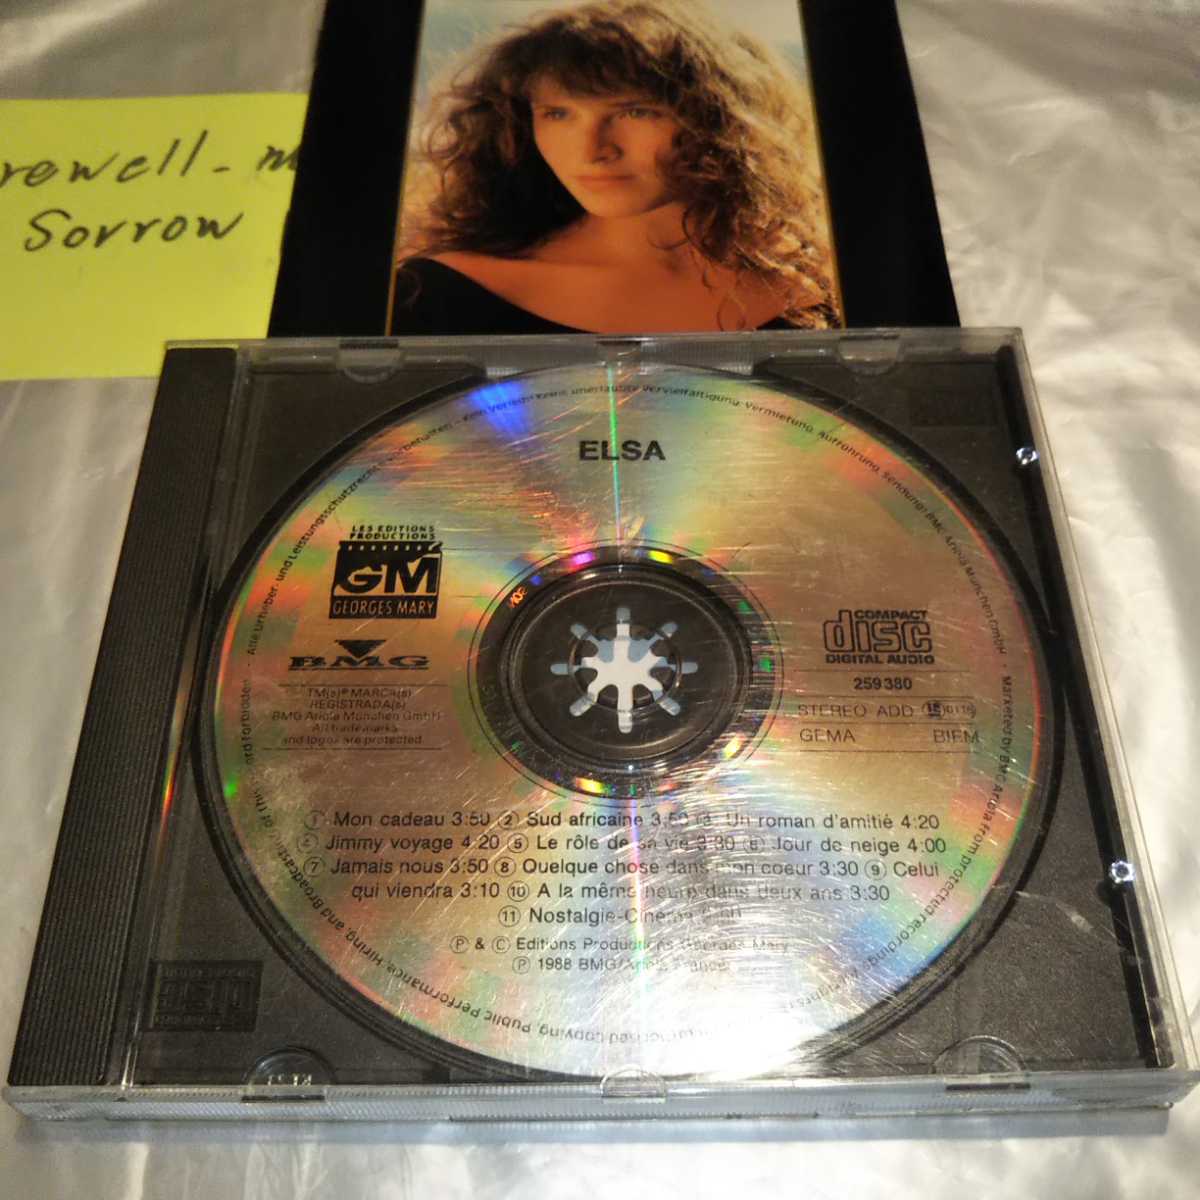 ELSA エルザ 仏盤CD ファーストアルバム 1988年 France フレンチポップ 女性ヴォーカル ふたりの時間 ガールポップ ウィスパーボイス_画像2